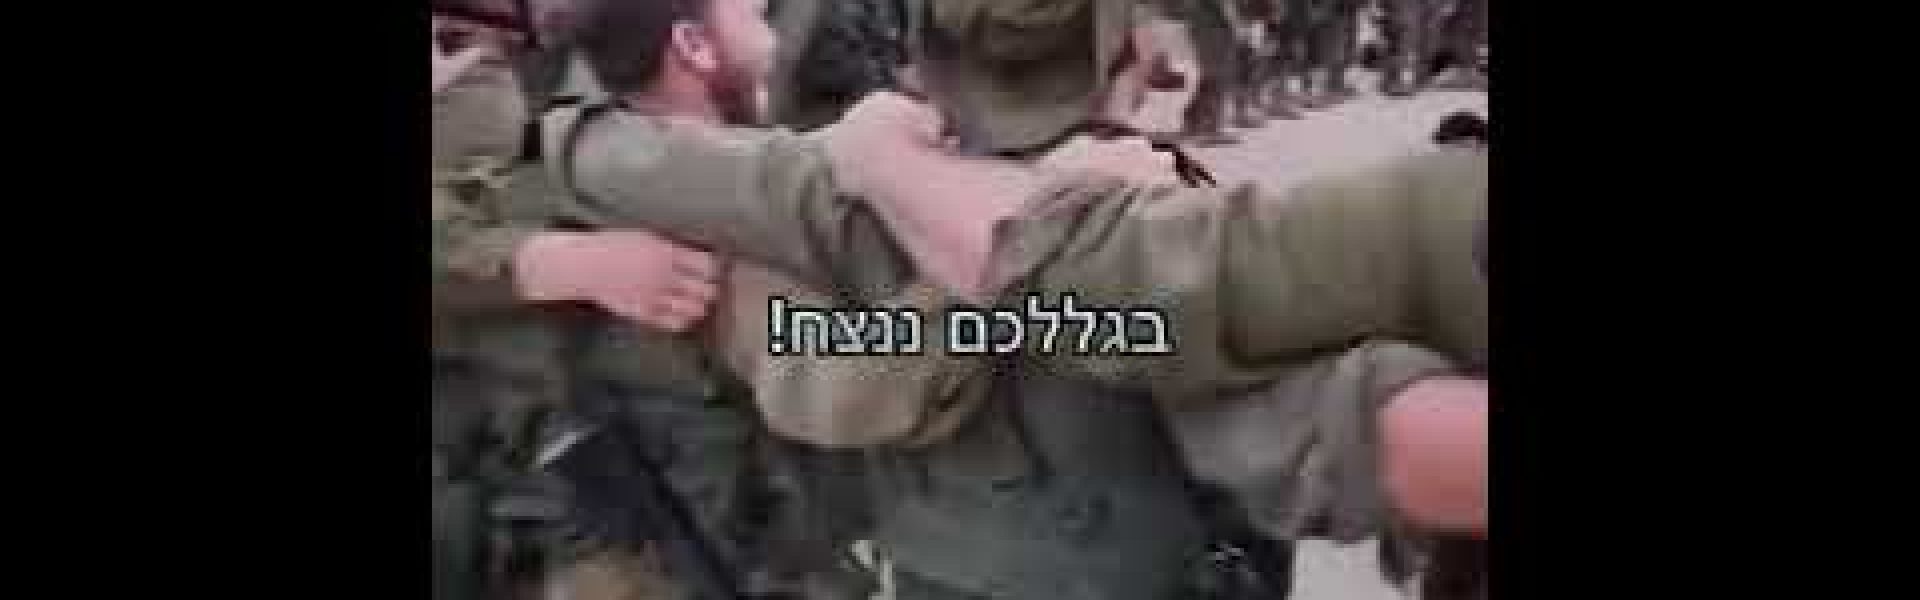 שבת שלום!! — Shabbat shalom from the soldiers